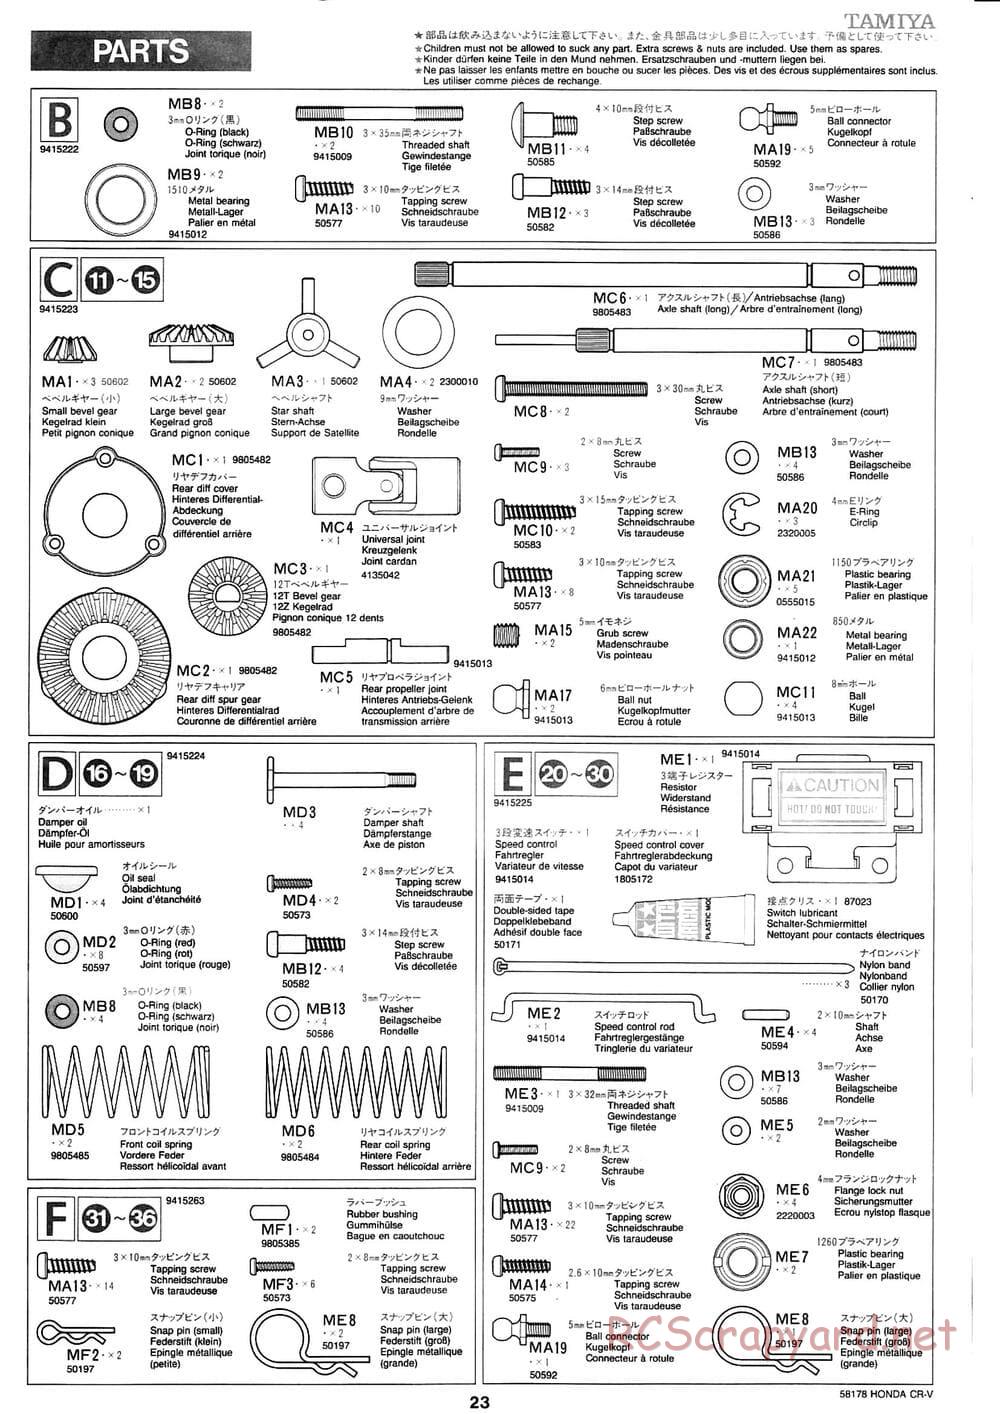 Tamiya - Honda CR-V - CC-01 Chassis - Manual - Page 23